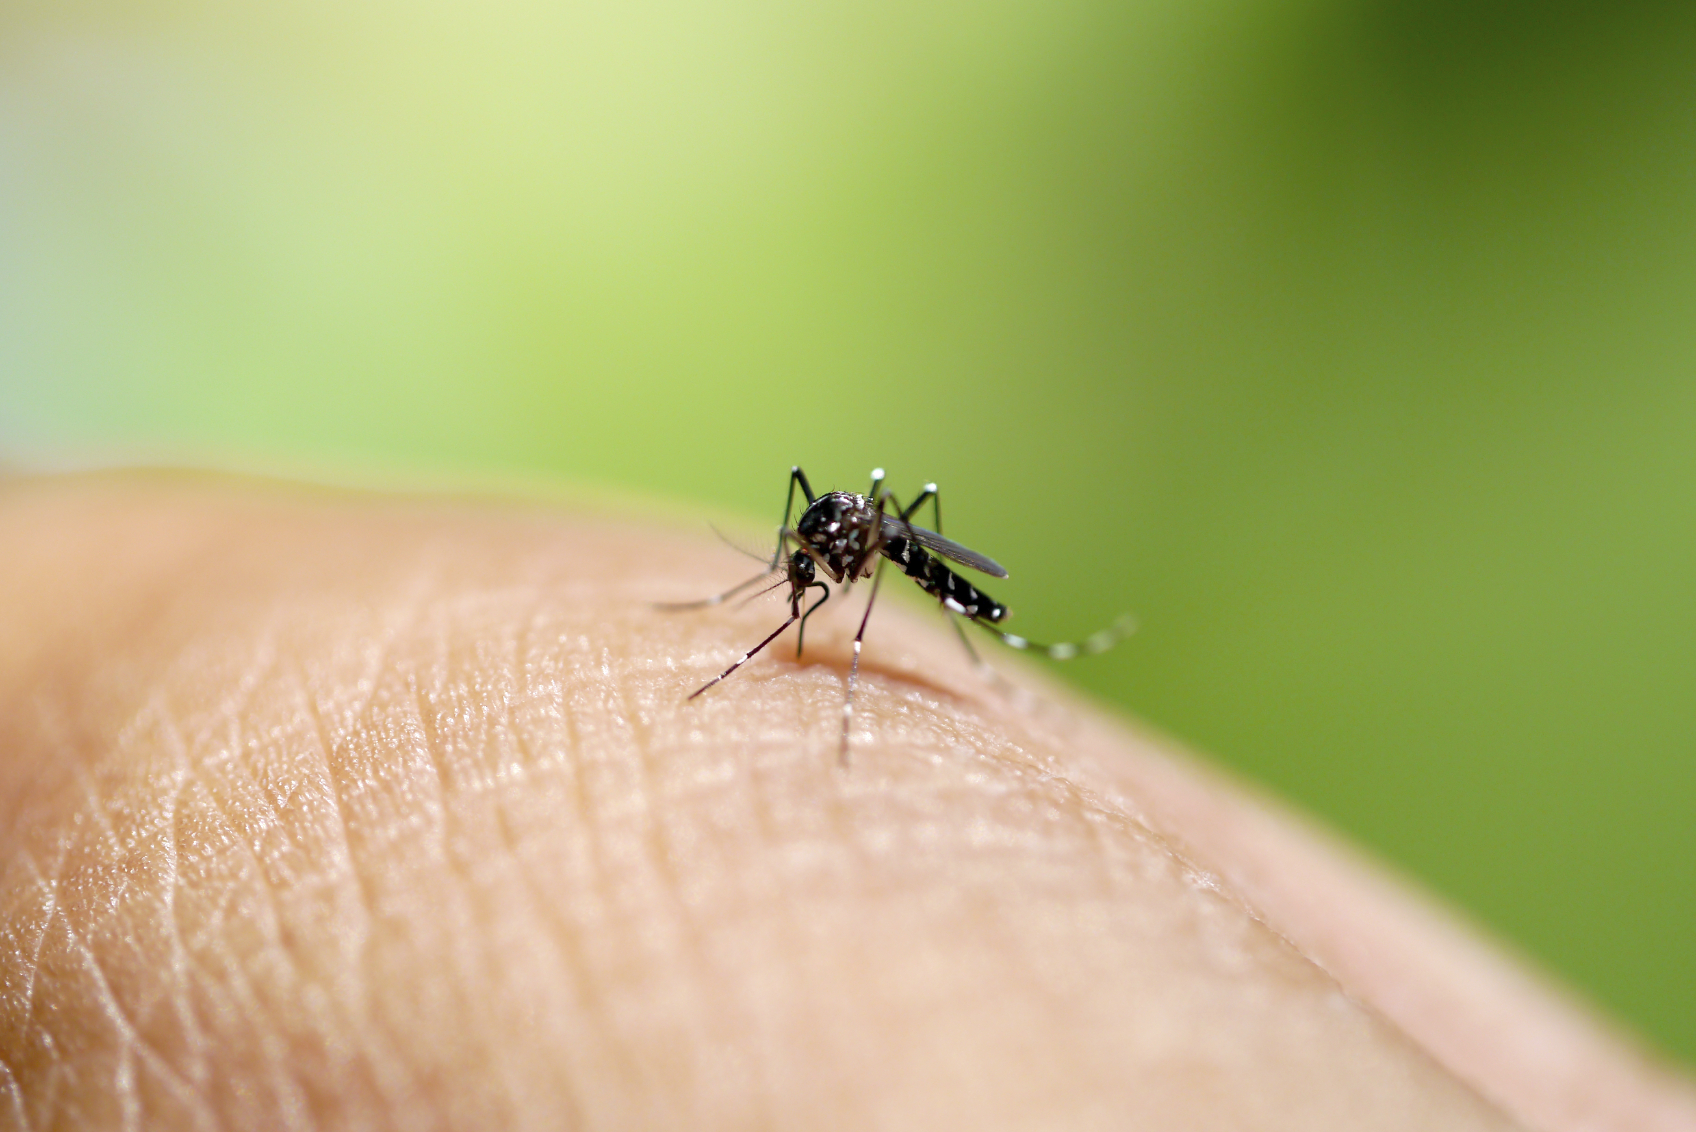 რატომ იზიდავთ კოღოებს? - 9 მიზეზი, რომელთა გამოც შესაძლოა, მწერებისთვის ‘’მიმზიდველი“ ხართ